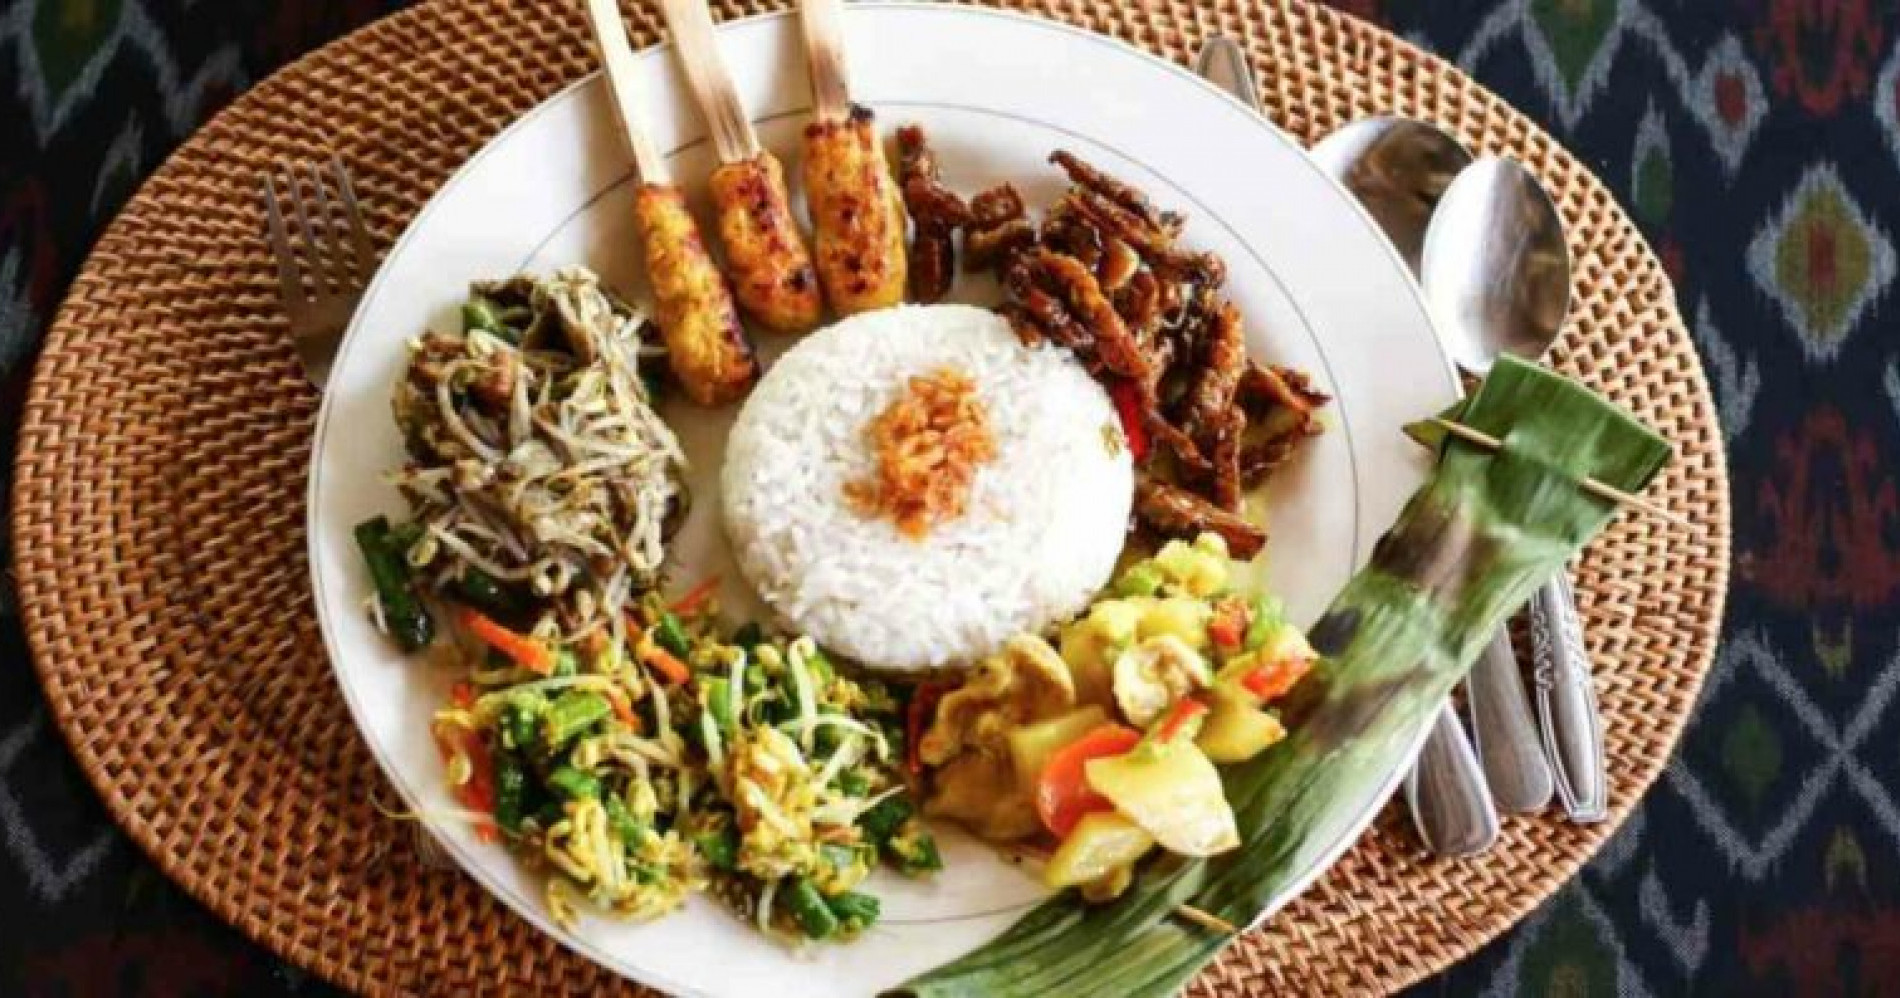 Wajib coba kuliner ini saat di Bali (Sumber gambar: tokopedia.com)